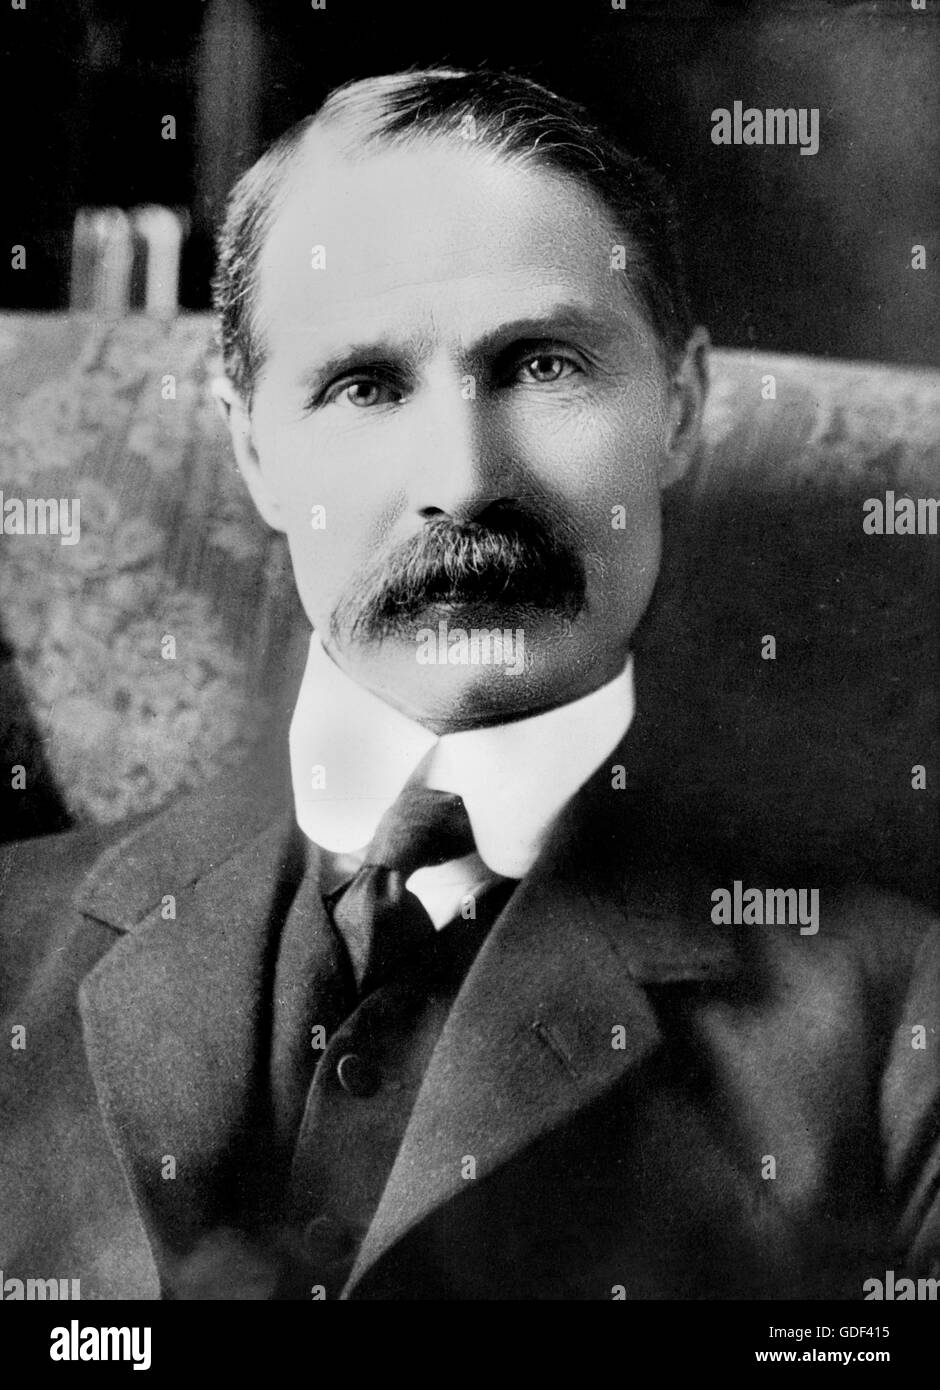 Andrew Bonar derecho. Retrato del primer ministro conservador británico, desde el Servicio de Noticias Bain c.1916 Foto de stock